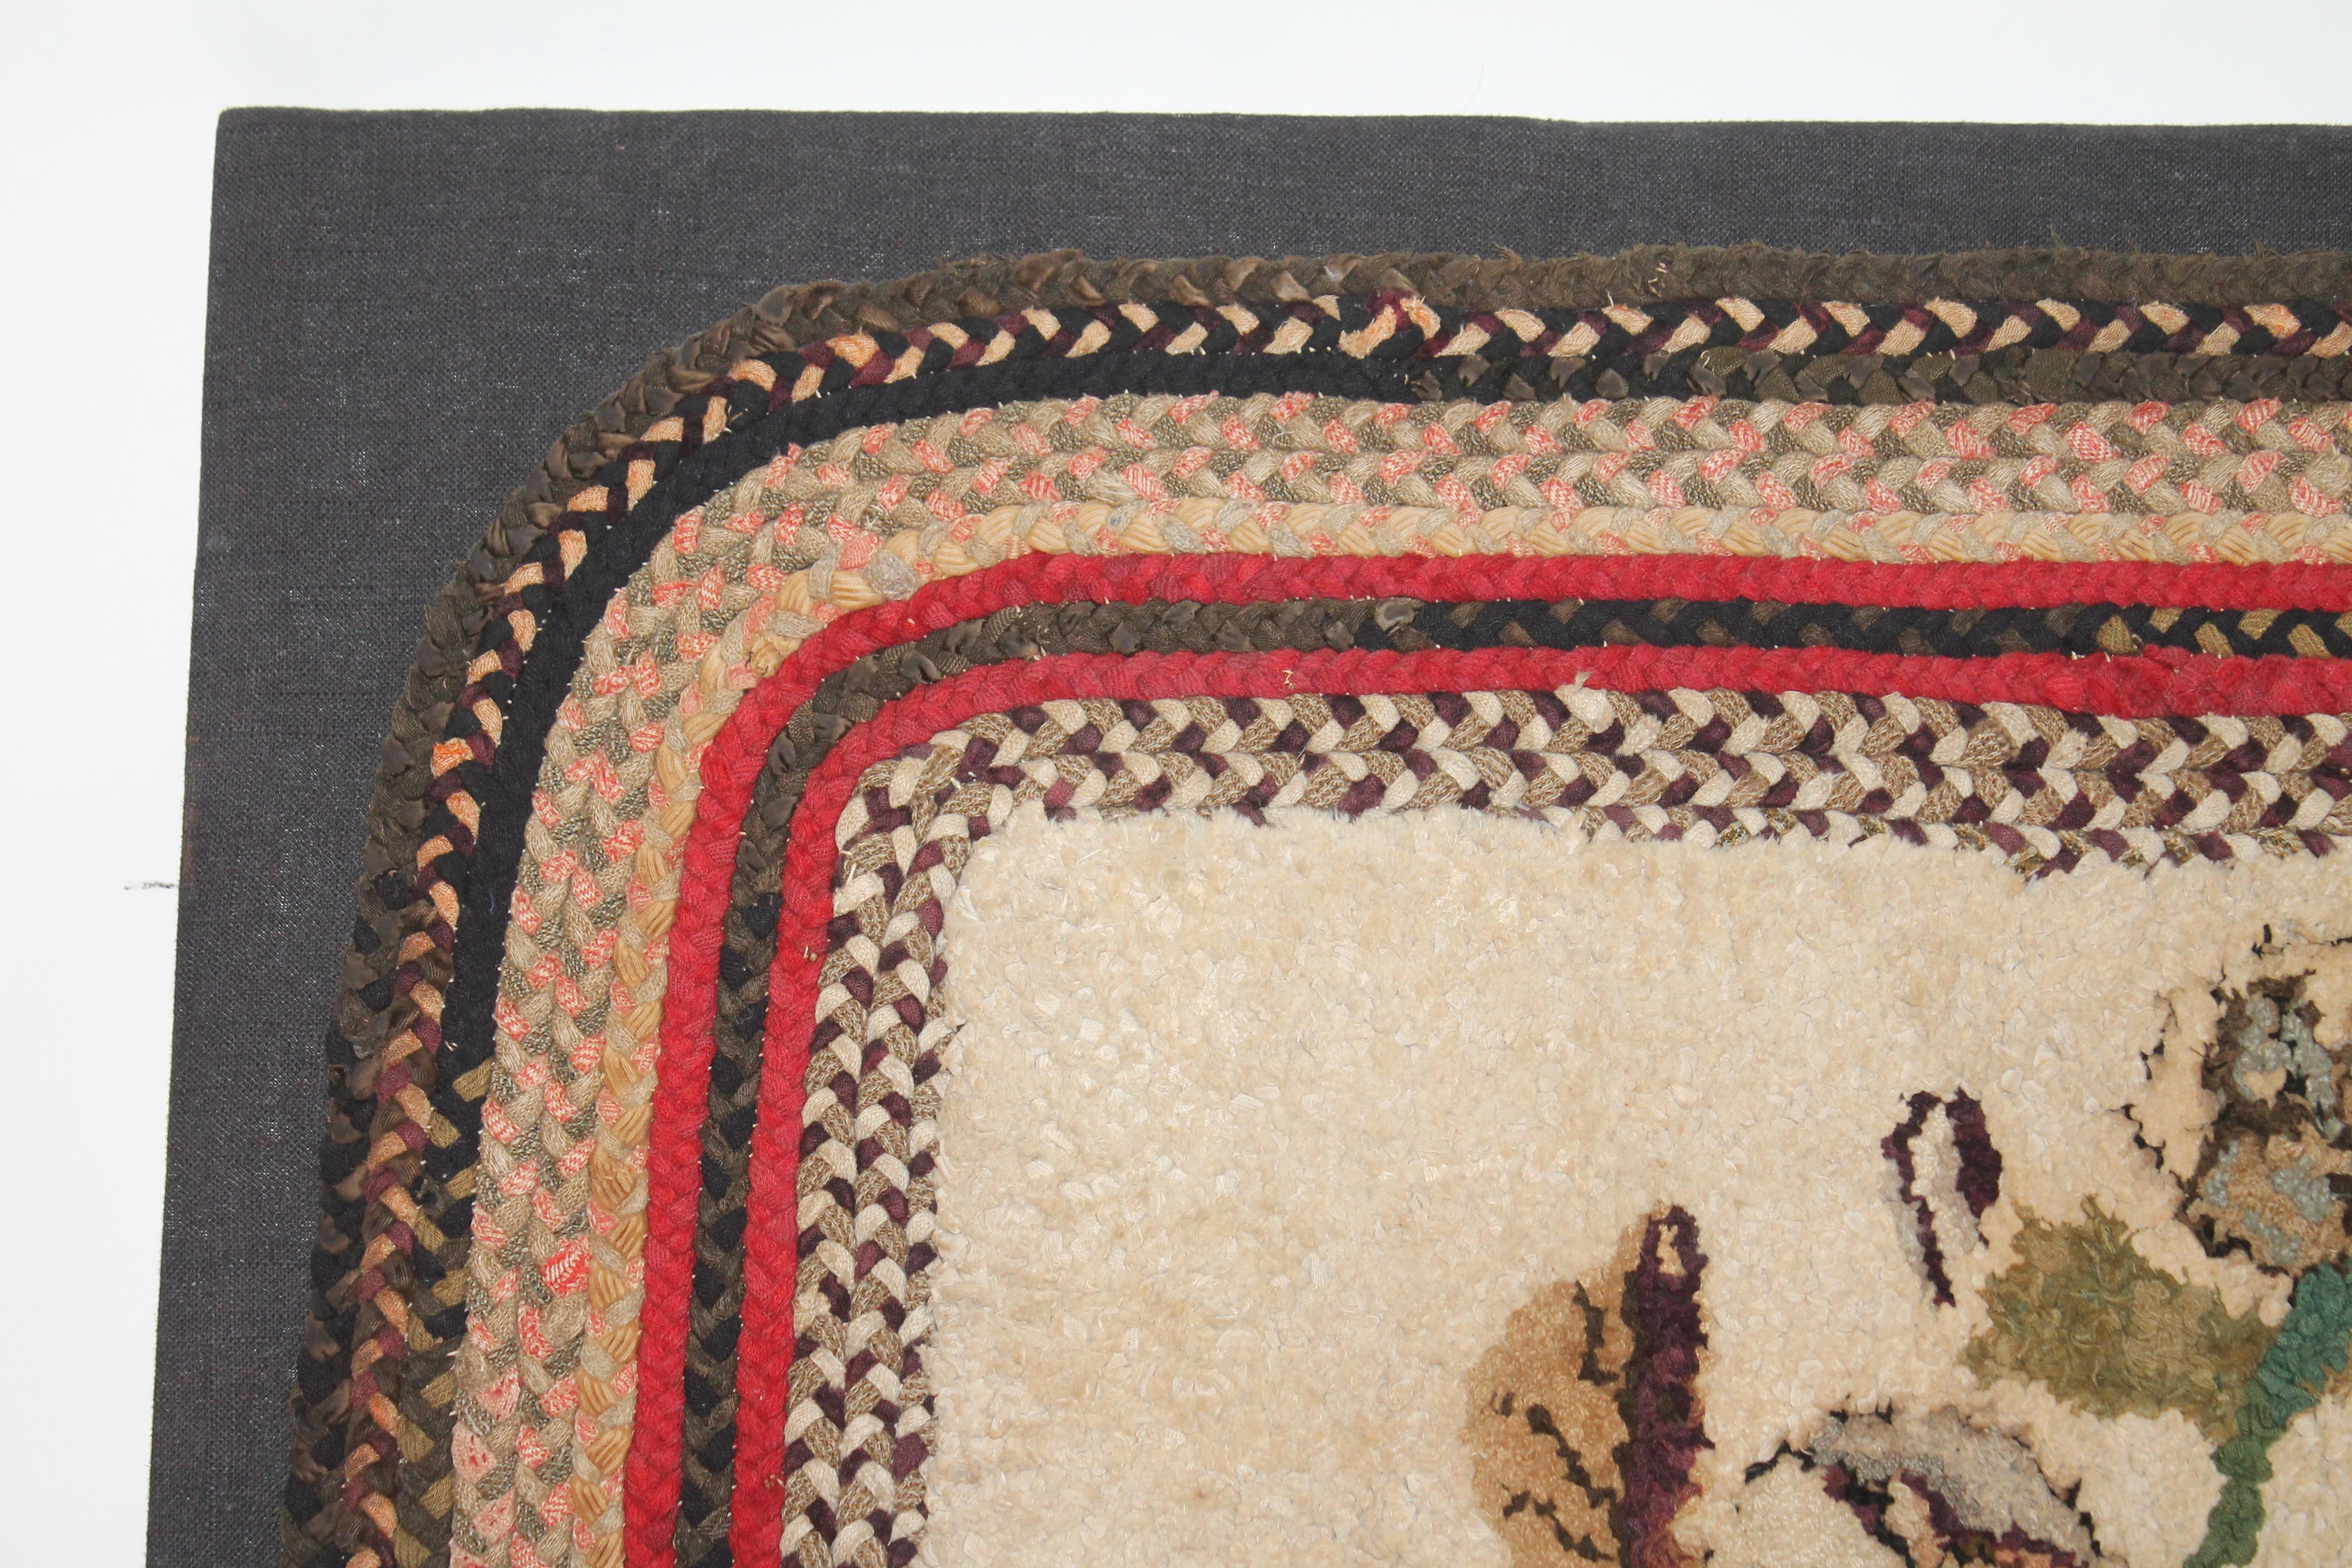 Dieser erstaunliche handgeknüpfte Teppich mit mehreren geflochtenen Bordüren ist aus dem 19. Jahrhundert und in sehr gutem Zustand. Dieses fantastische Kunstwerk stammt aus der Sammlung Ex Stephen Score Antiques Inc. aus Boston, Mass. Er ist ein